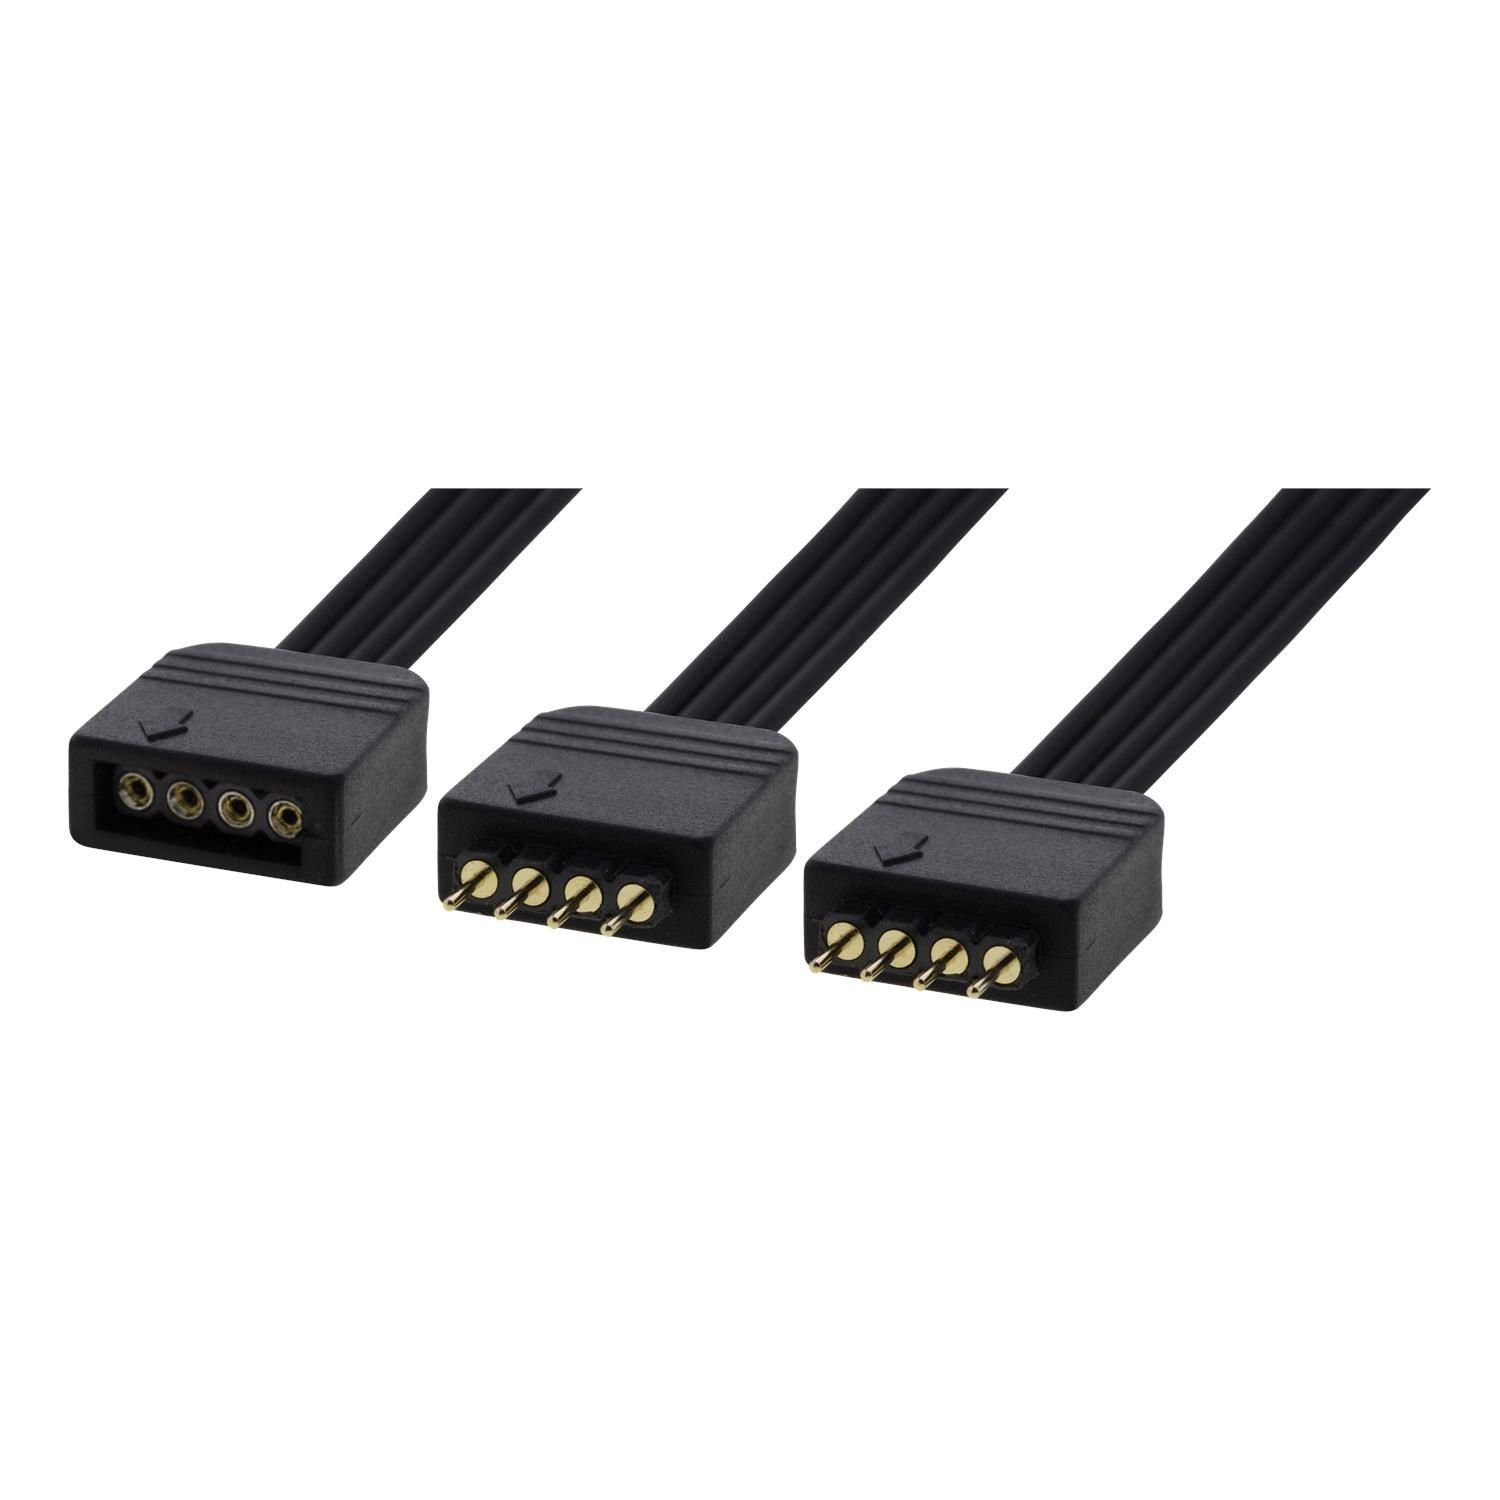 DELTACO LED Strip Y-Kabel RGB 15 cm (4-polig, Asus, Msi, Asrock, Gigabyte)  Netzkabel, inkl. 5 Jahre Herstellergarantie